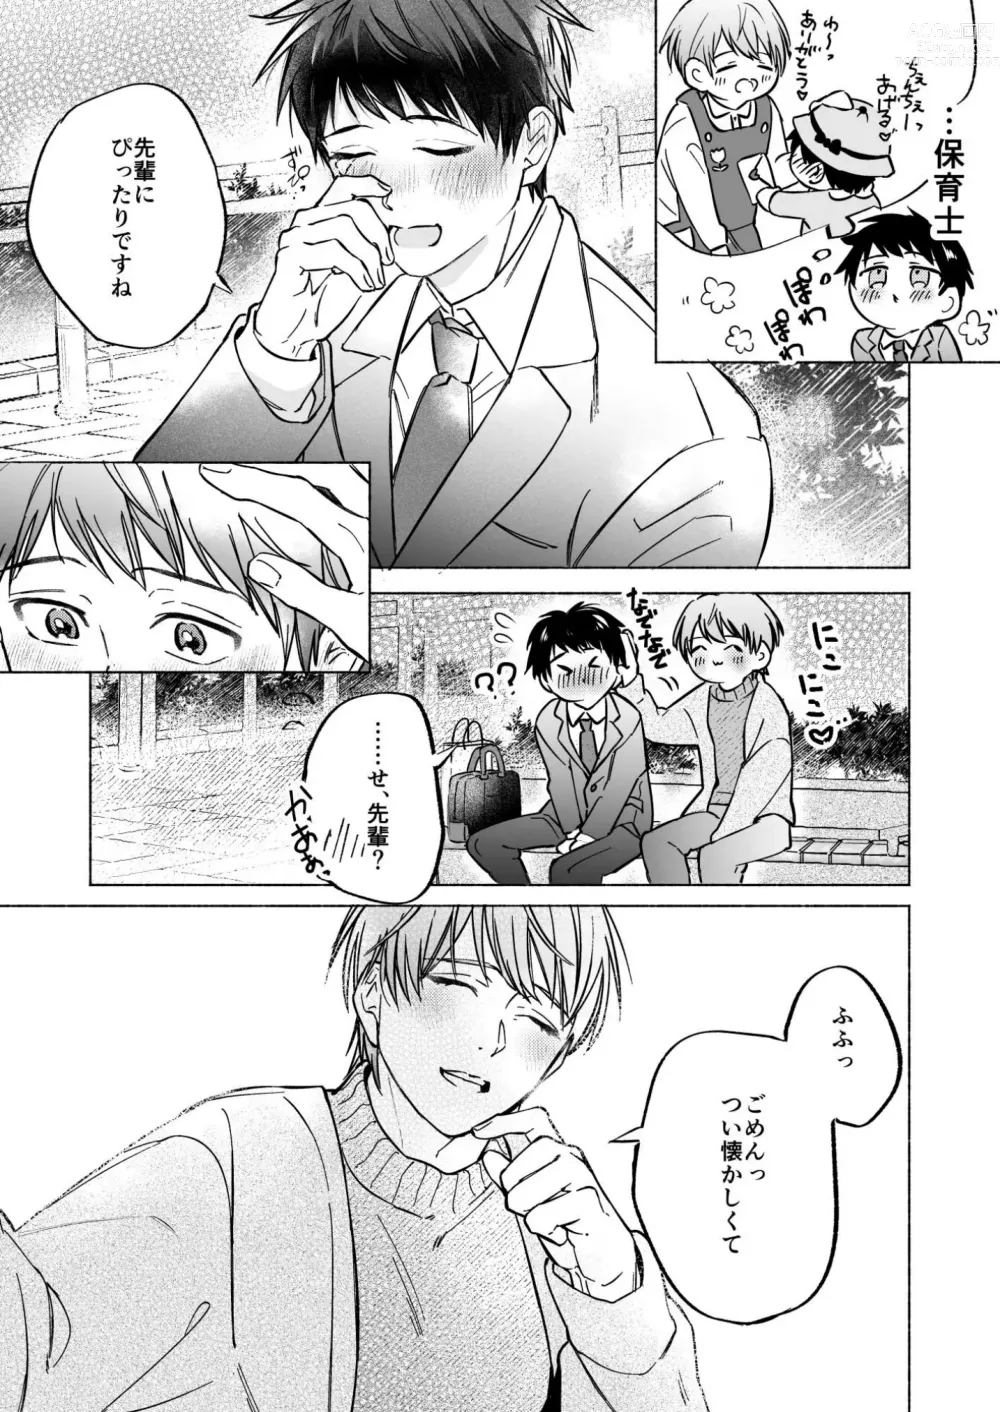 Page 7 of doujinshi Shachiku Salaryman toro ama yoshiyoshi Ecchi